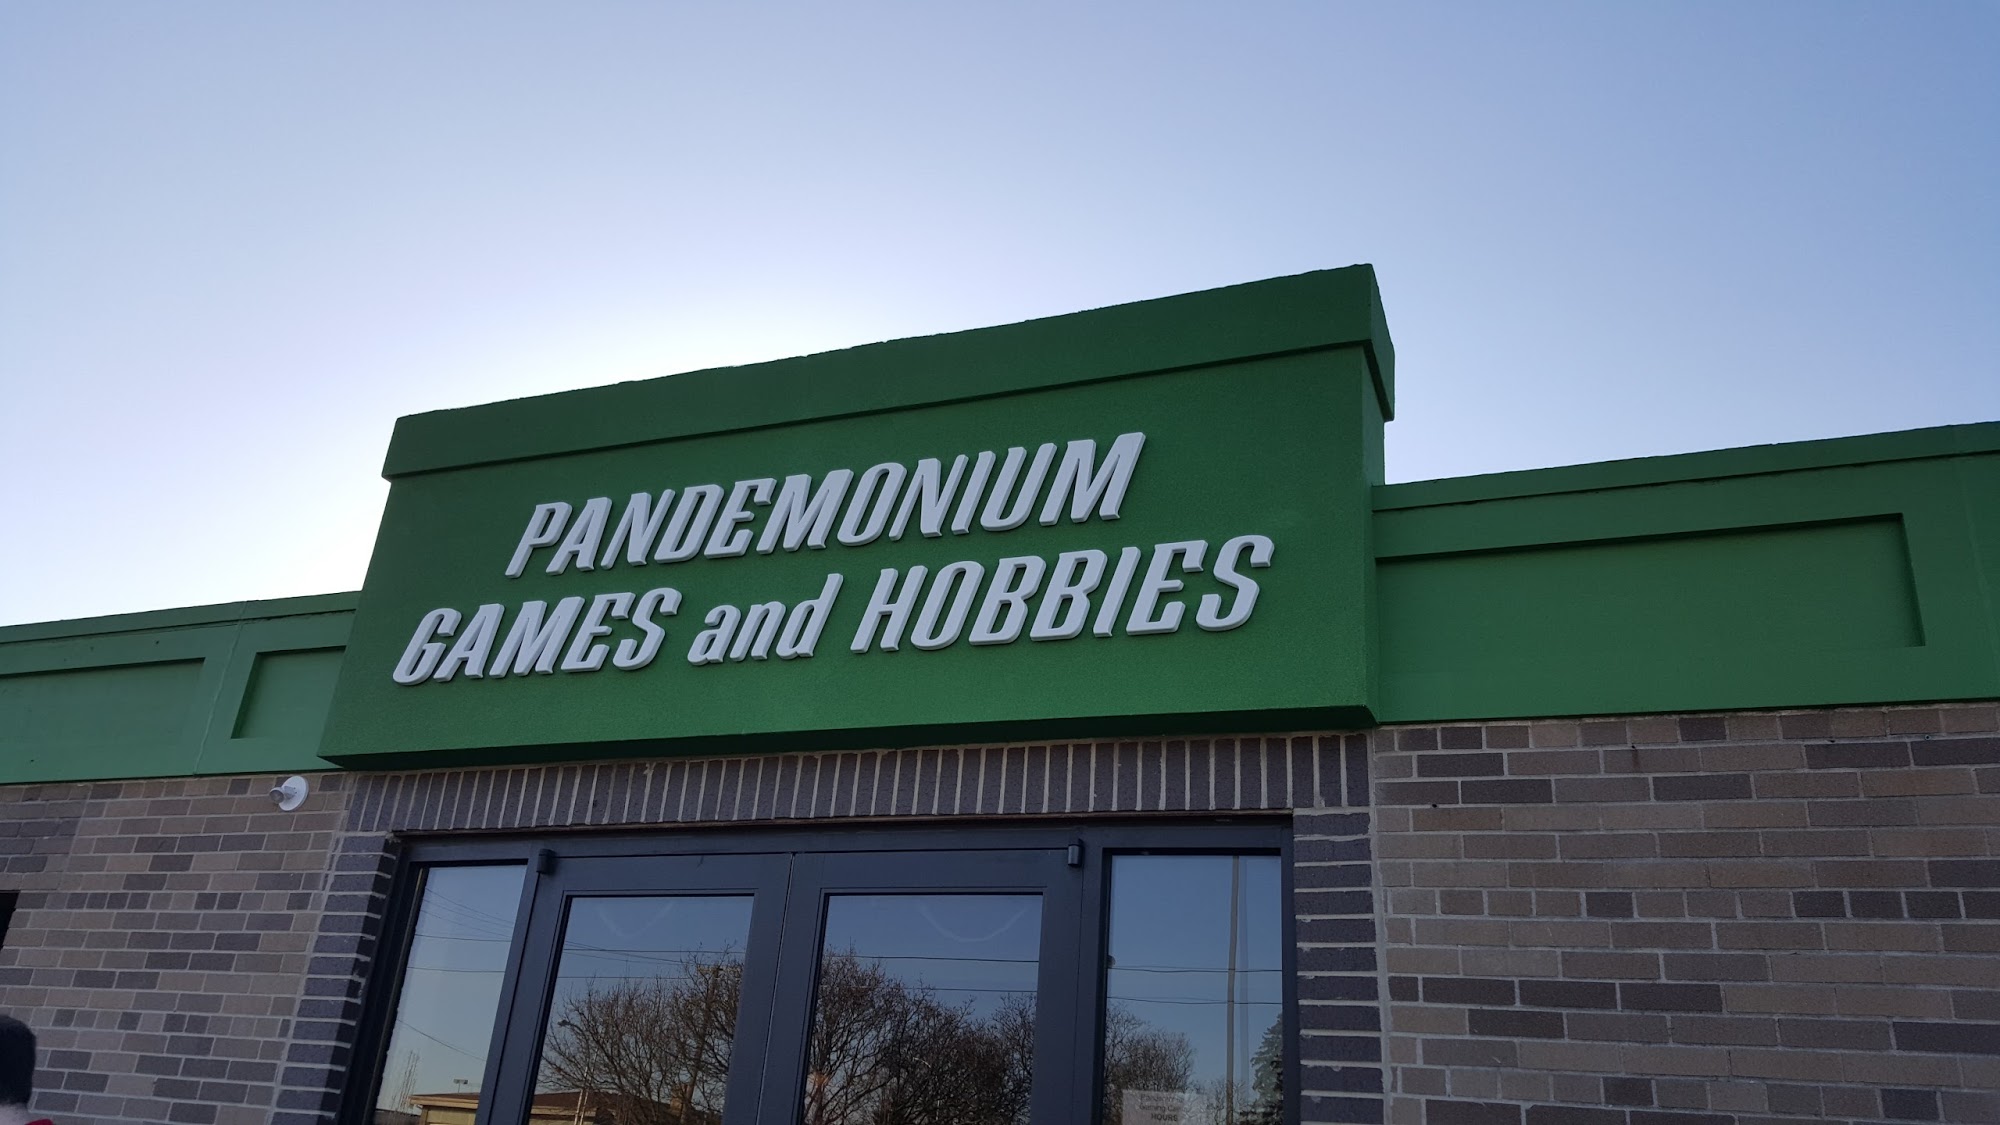 Pandemonium Games and Hobbies